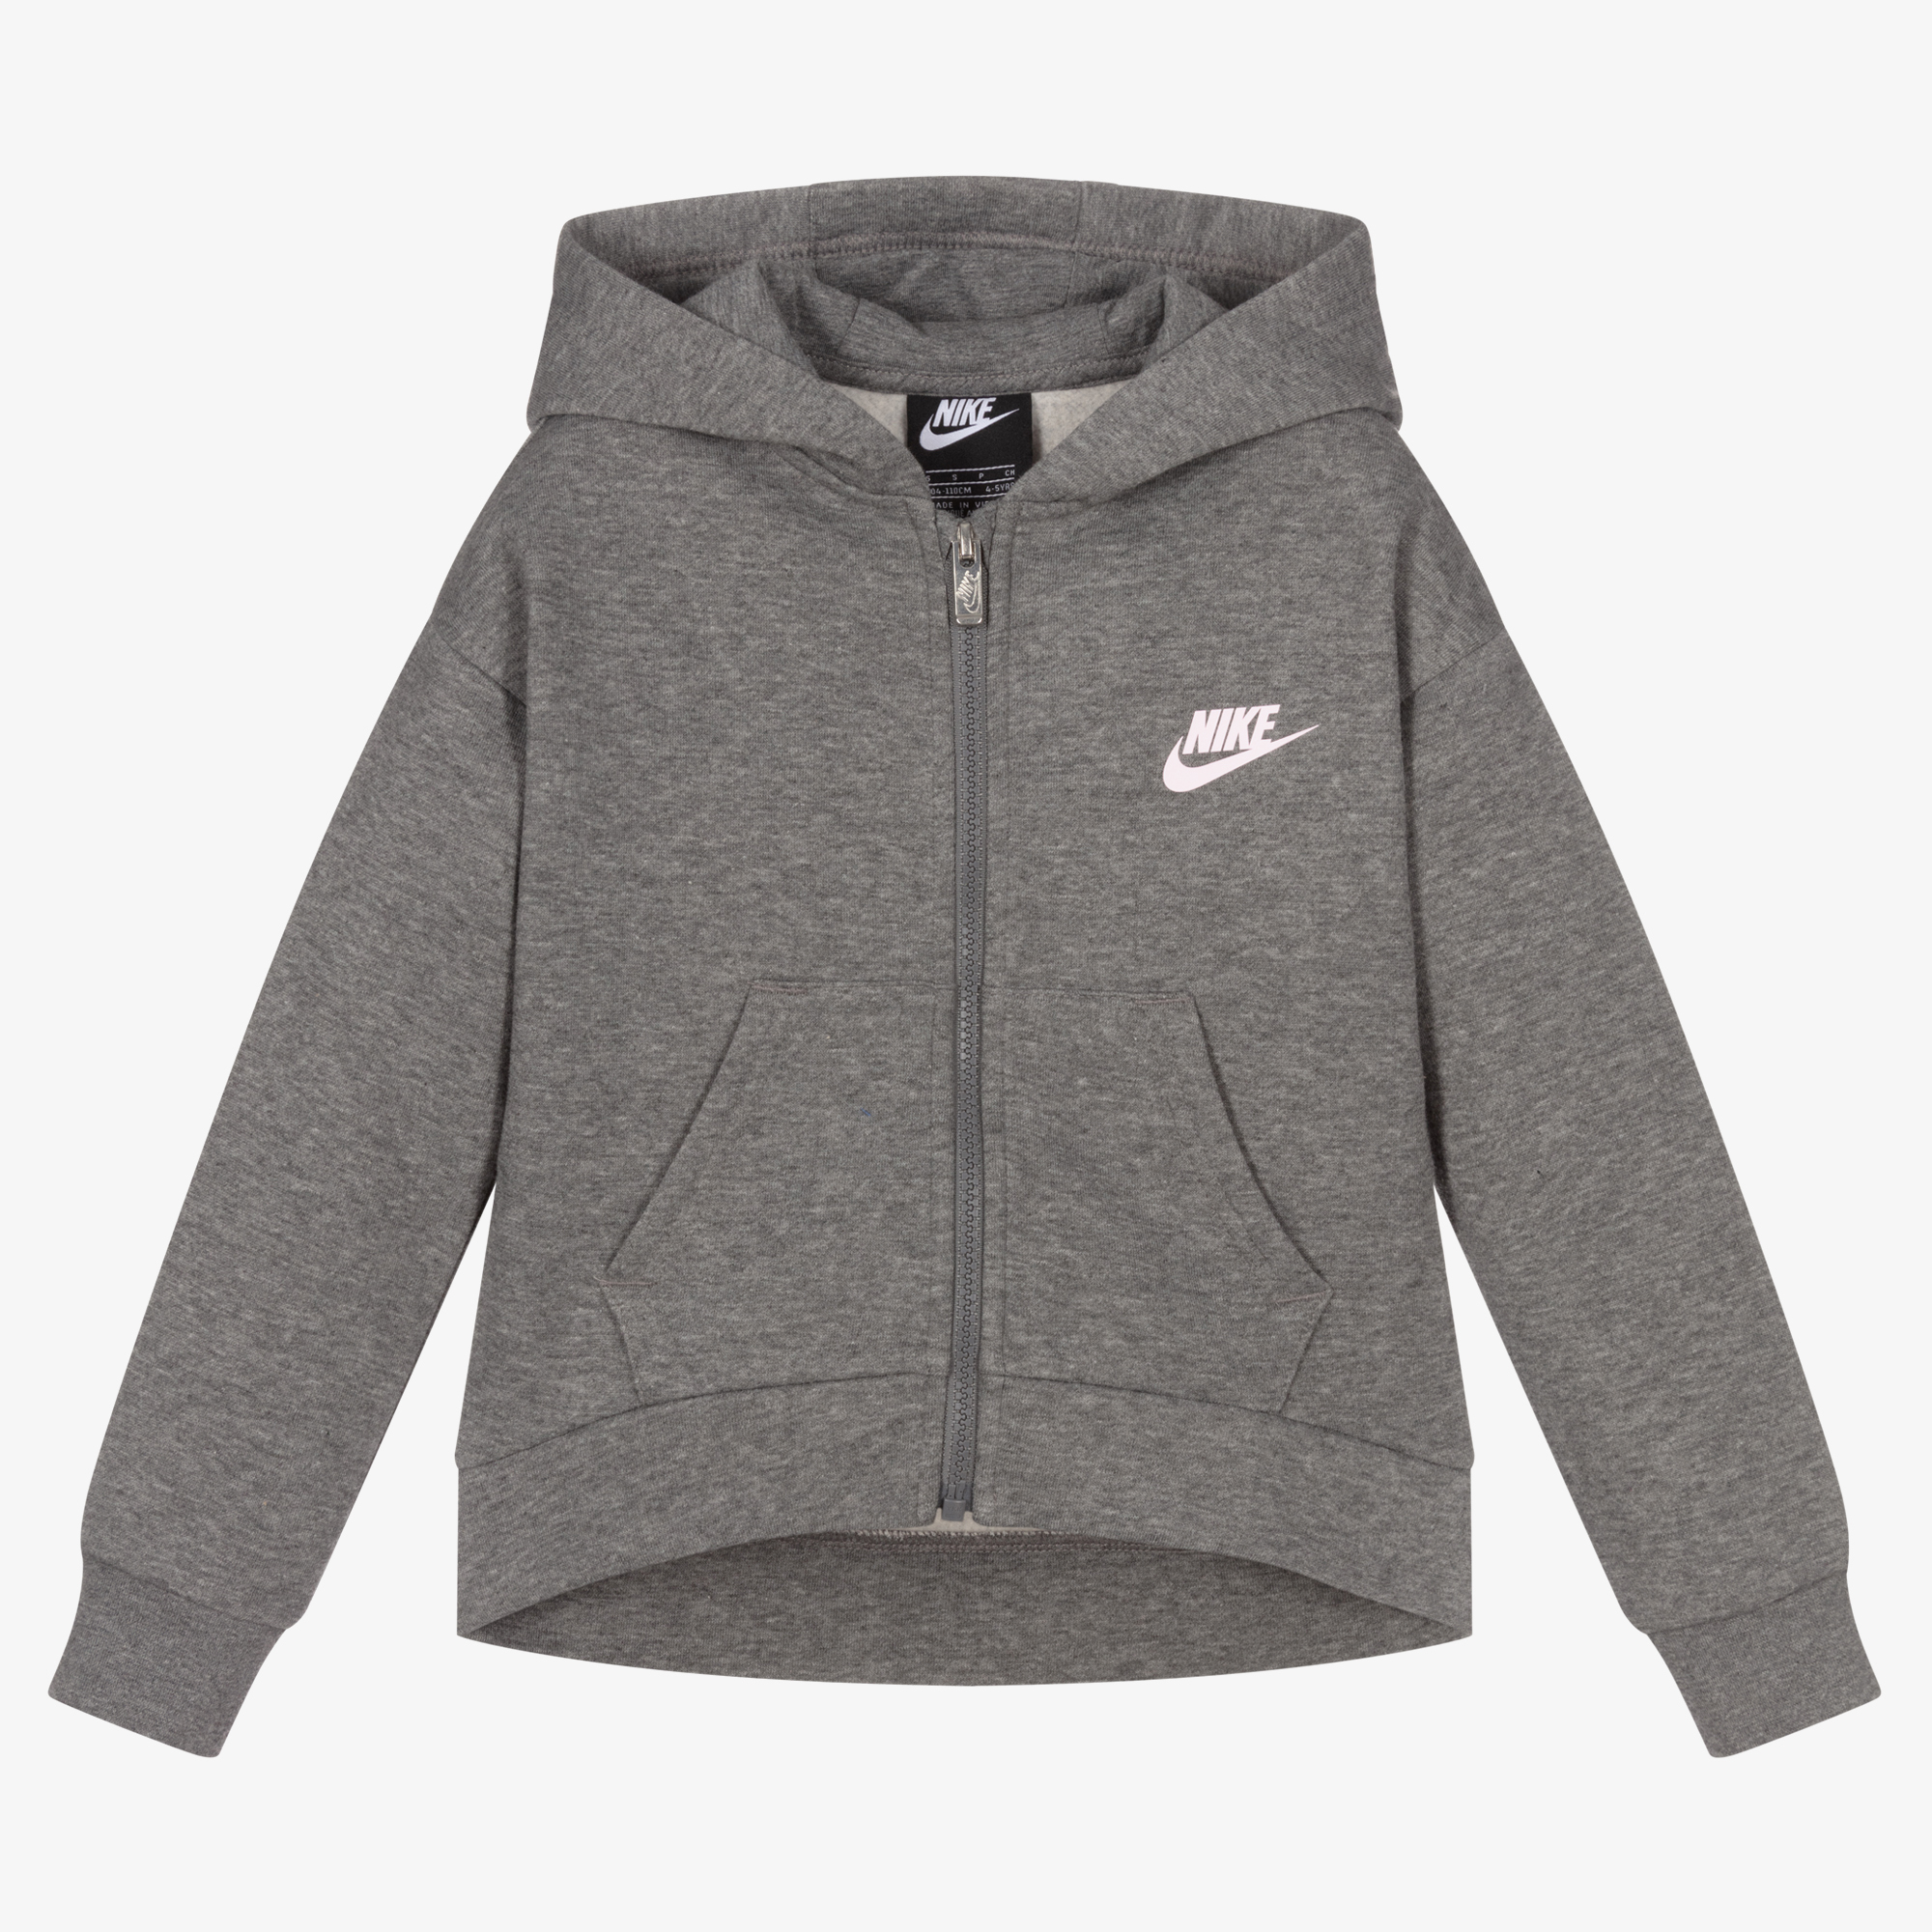 Nike Girls Grey Zip-Up Hooded Top